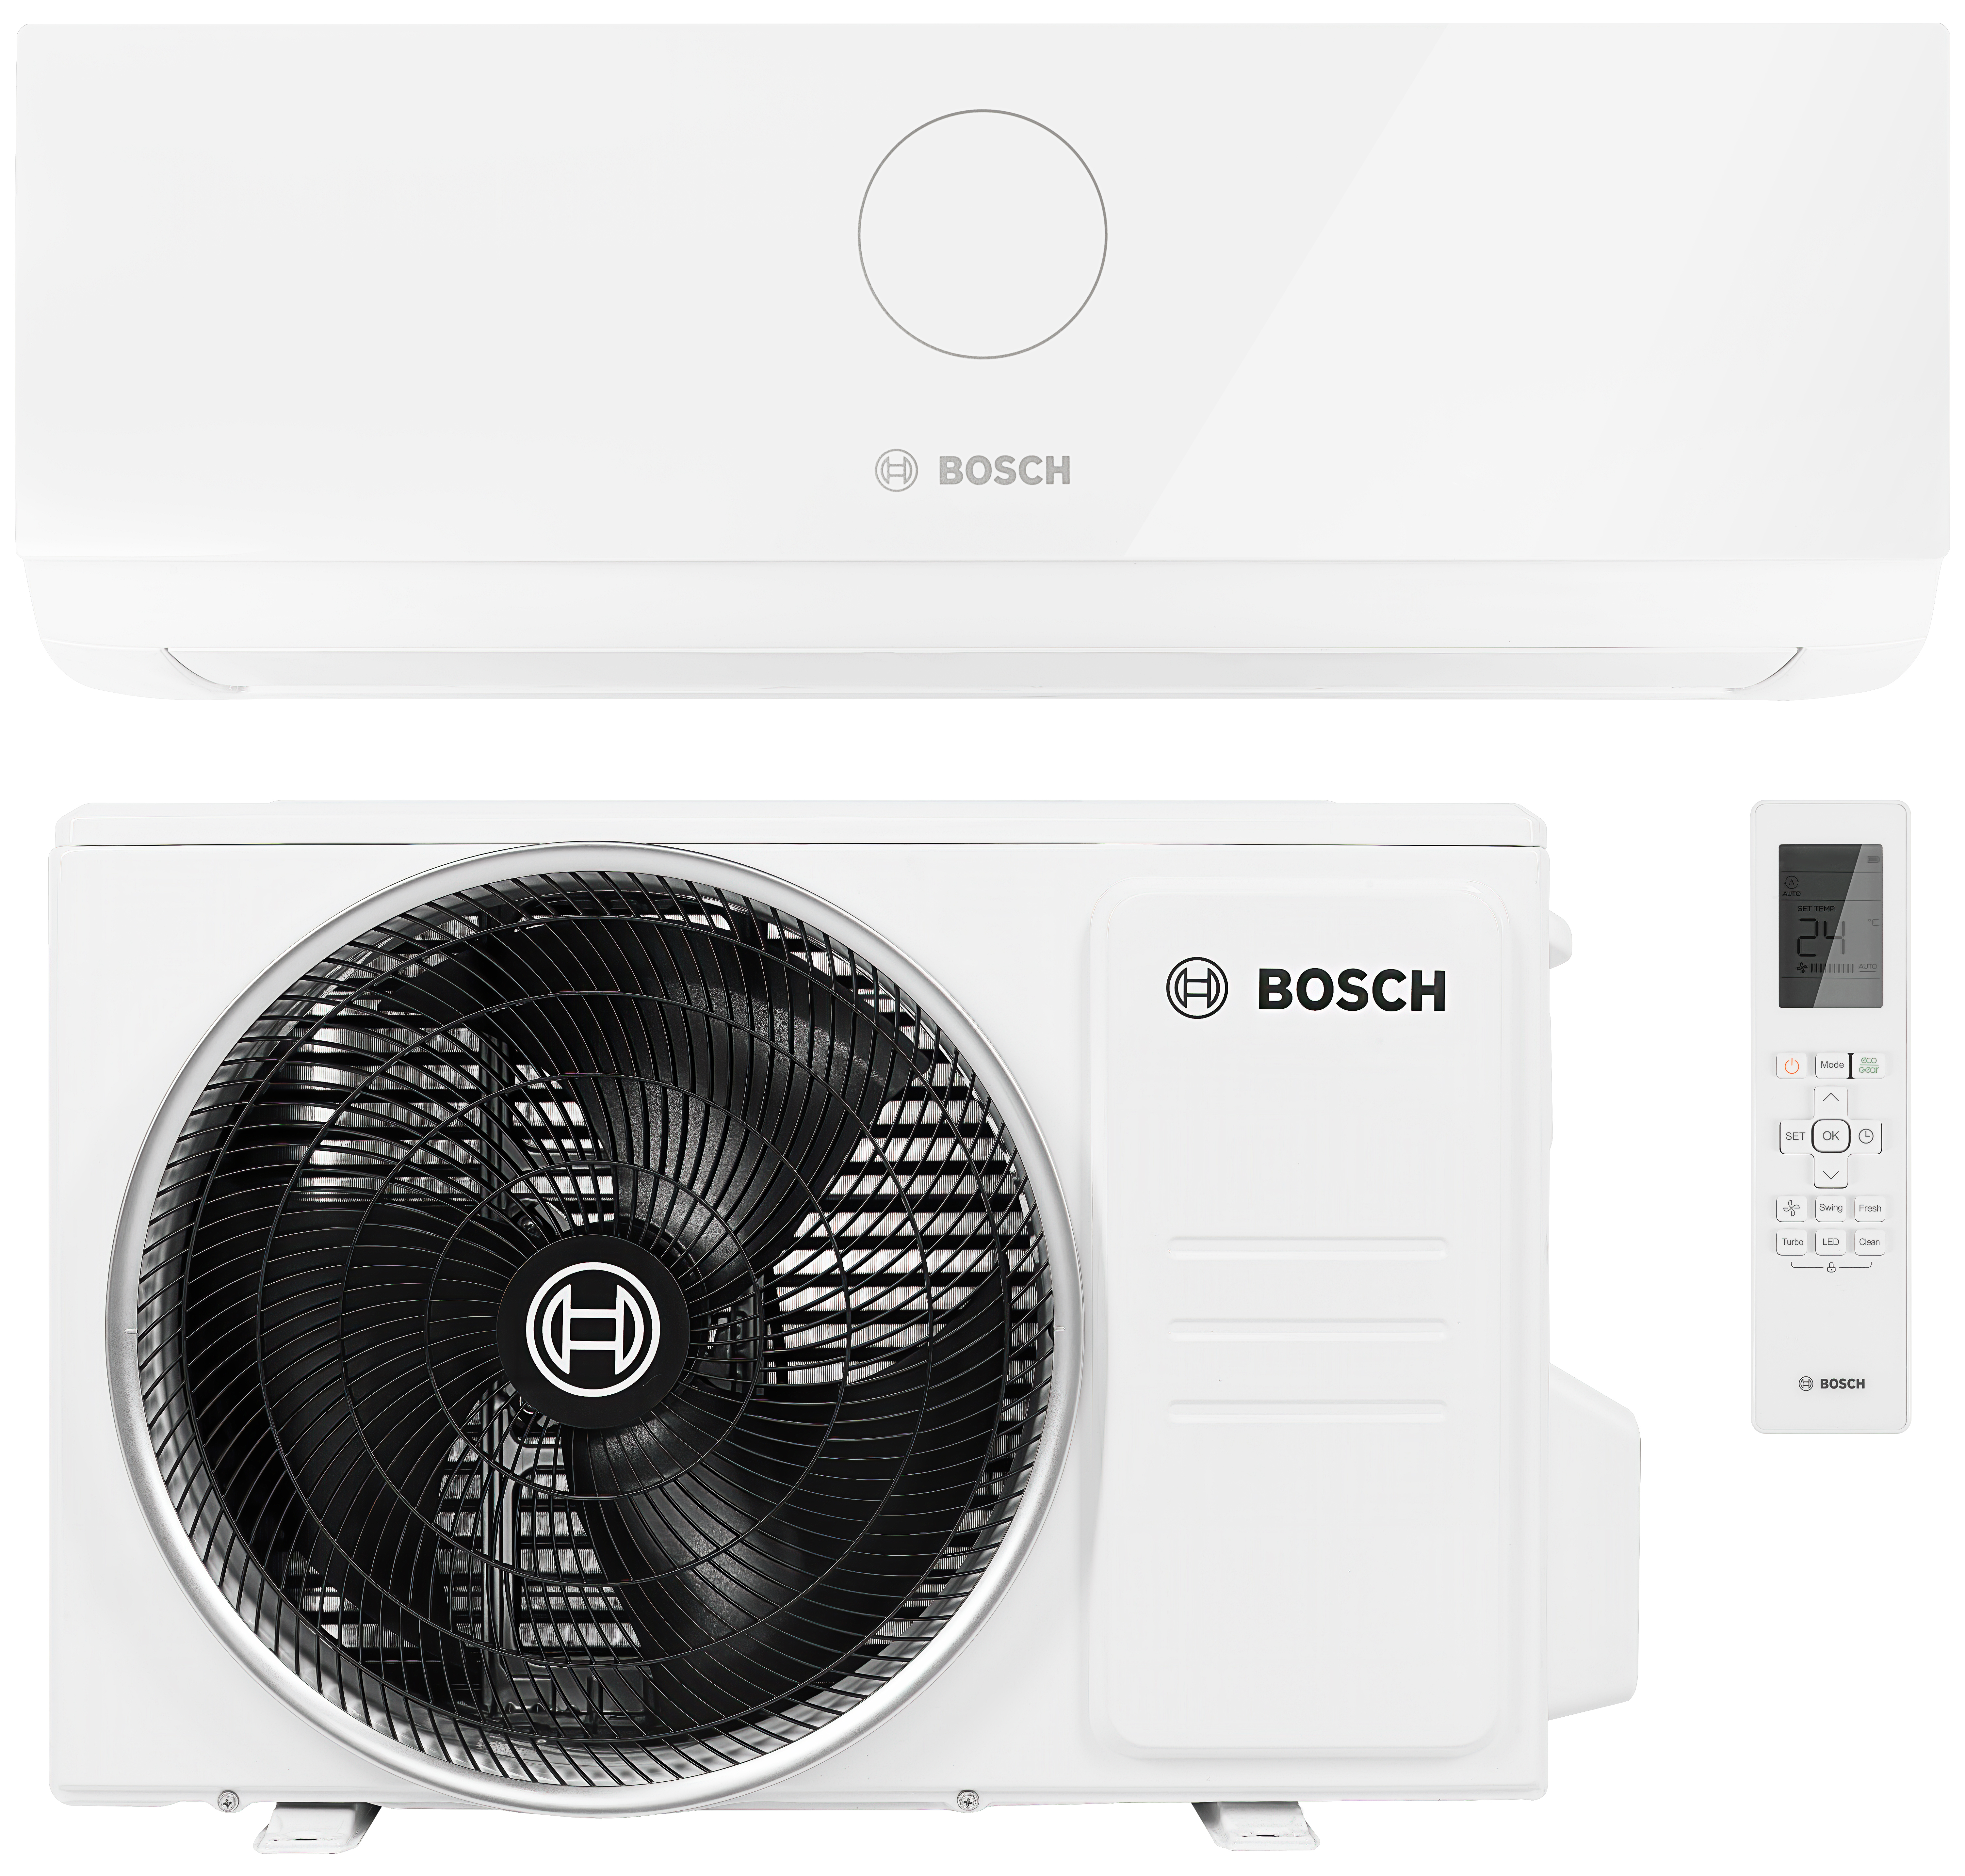 Кондиционер сплит-система Bosch Climate CL3000i 26 E в интернет-магазине, главное фото